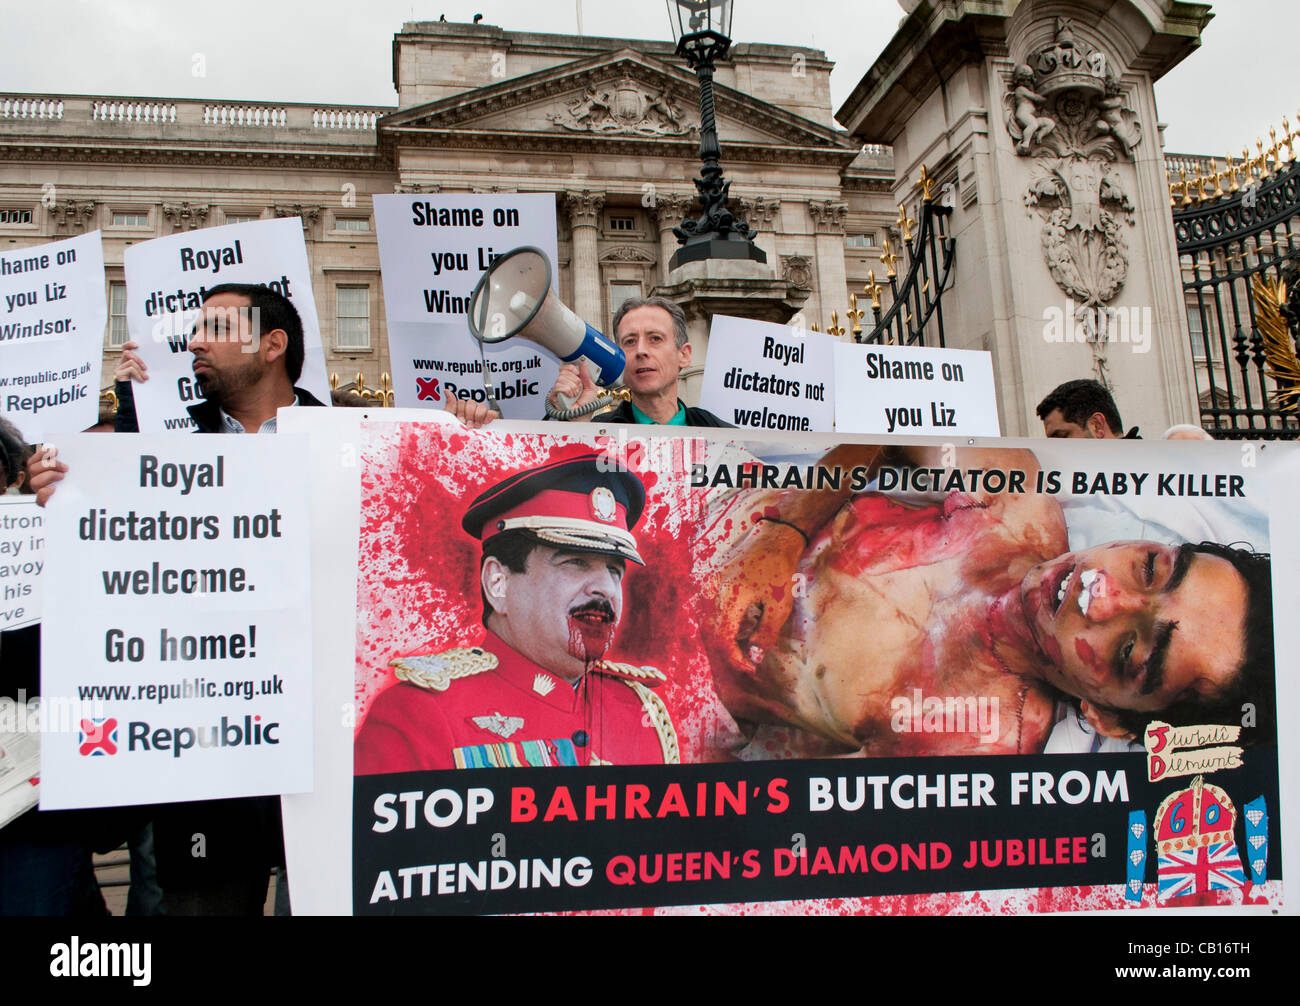 Londra, Regno Unito. 18/05/12. Attivista per i diritti umani, Peter Tatchell a una protesta contro la regina per la decisione di invitare i vari capi di stato di paesi come il Bahrain, dove essi rivendicazione, abusi dei diritti umani e il soffocamento di crescita democratica sono in corso. Foto Stock